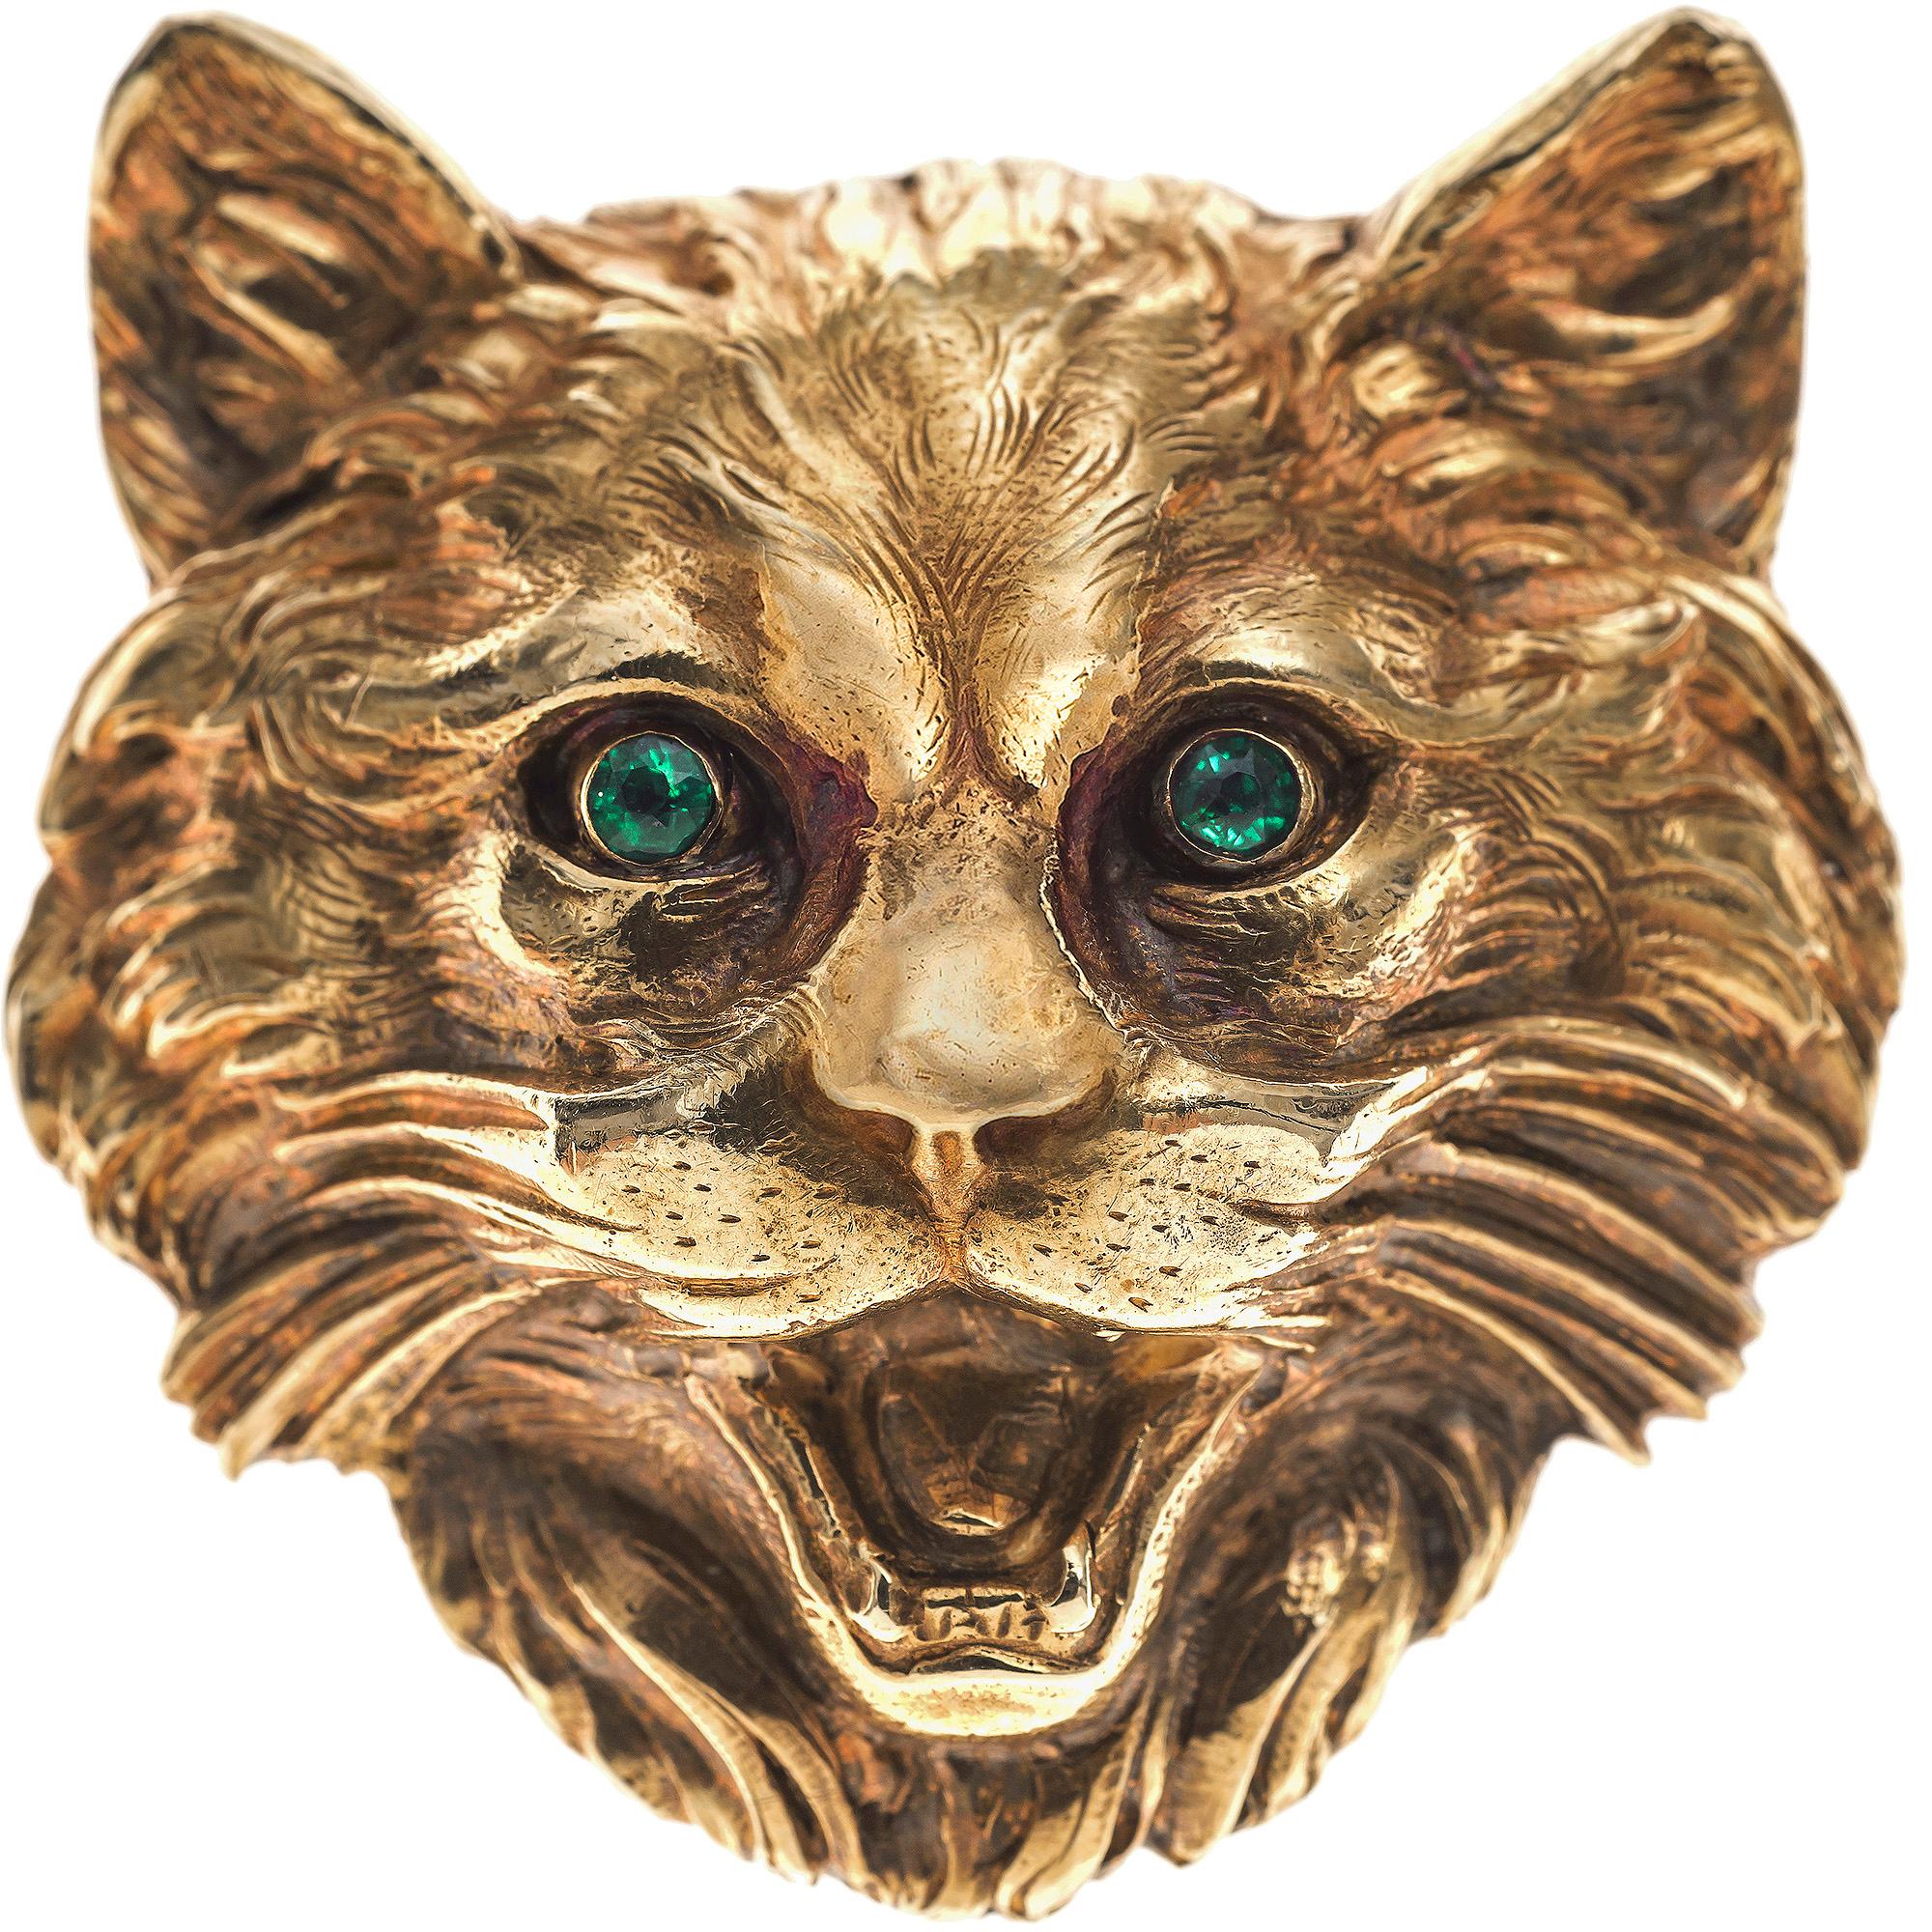 Broche naturaliste très expressive d'une tête de chat avec deux yeux en émeraude facettés. La fourrure du chat est ciselée de façon naturaliste et gravée dans de l'or 18K rouge et jaune. Il y a une marque de contrôle française sur le crochet.